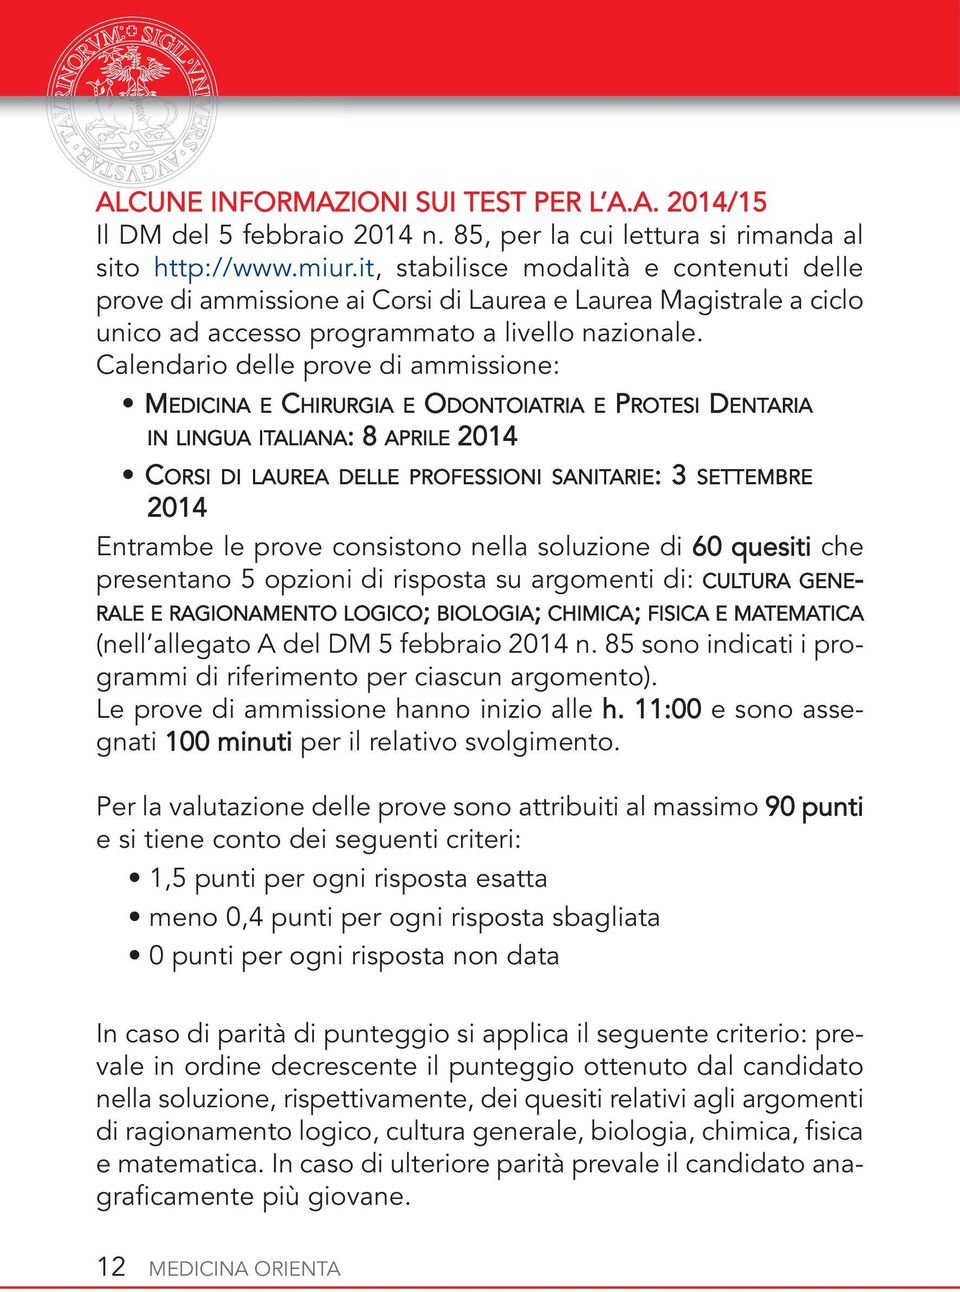 Calendario delle prove di ammissione: MEDICINA E CHIRURGIA E ODONTOIATRIA E PROTESI DENTARIA IN LINGUA ITALIANA: 8 APRILE 2014 CORSI DI LAUREA DELLE PROFESSIONI SANITARIE: 3 SETTEMBRE 2014 Entrambe